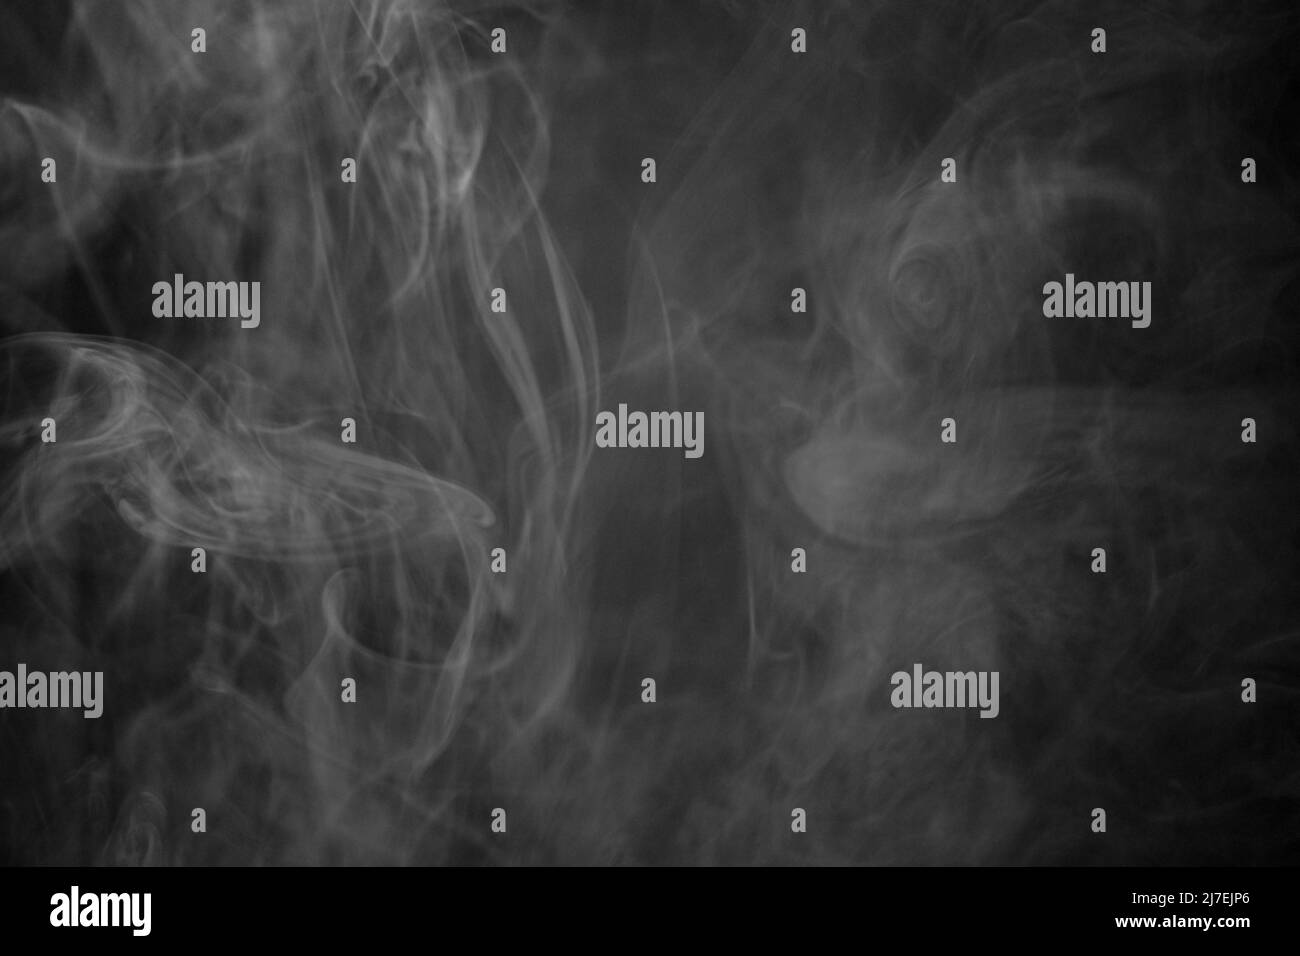 Eine Schwarz-Weiß-Aufnahme einer Rauchwolke vor schwarzem Hintergrund, Foto könnte als Hintergrund, Rauchstruktur oder abstrakt verwendet werden - Stock Photography Stockfoto